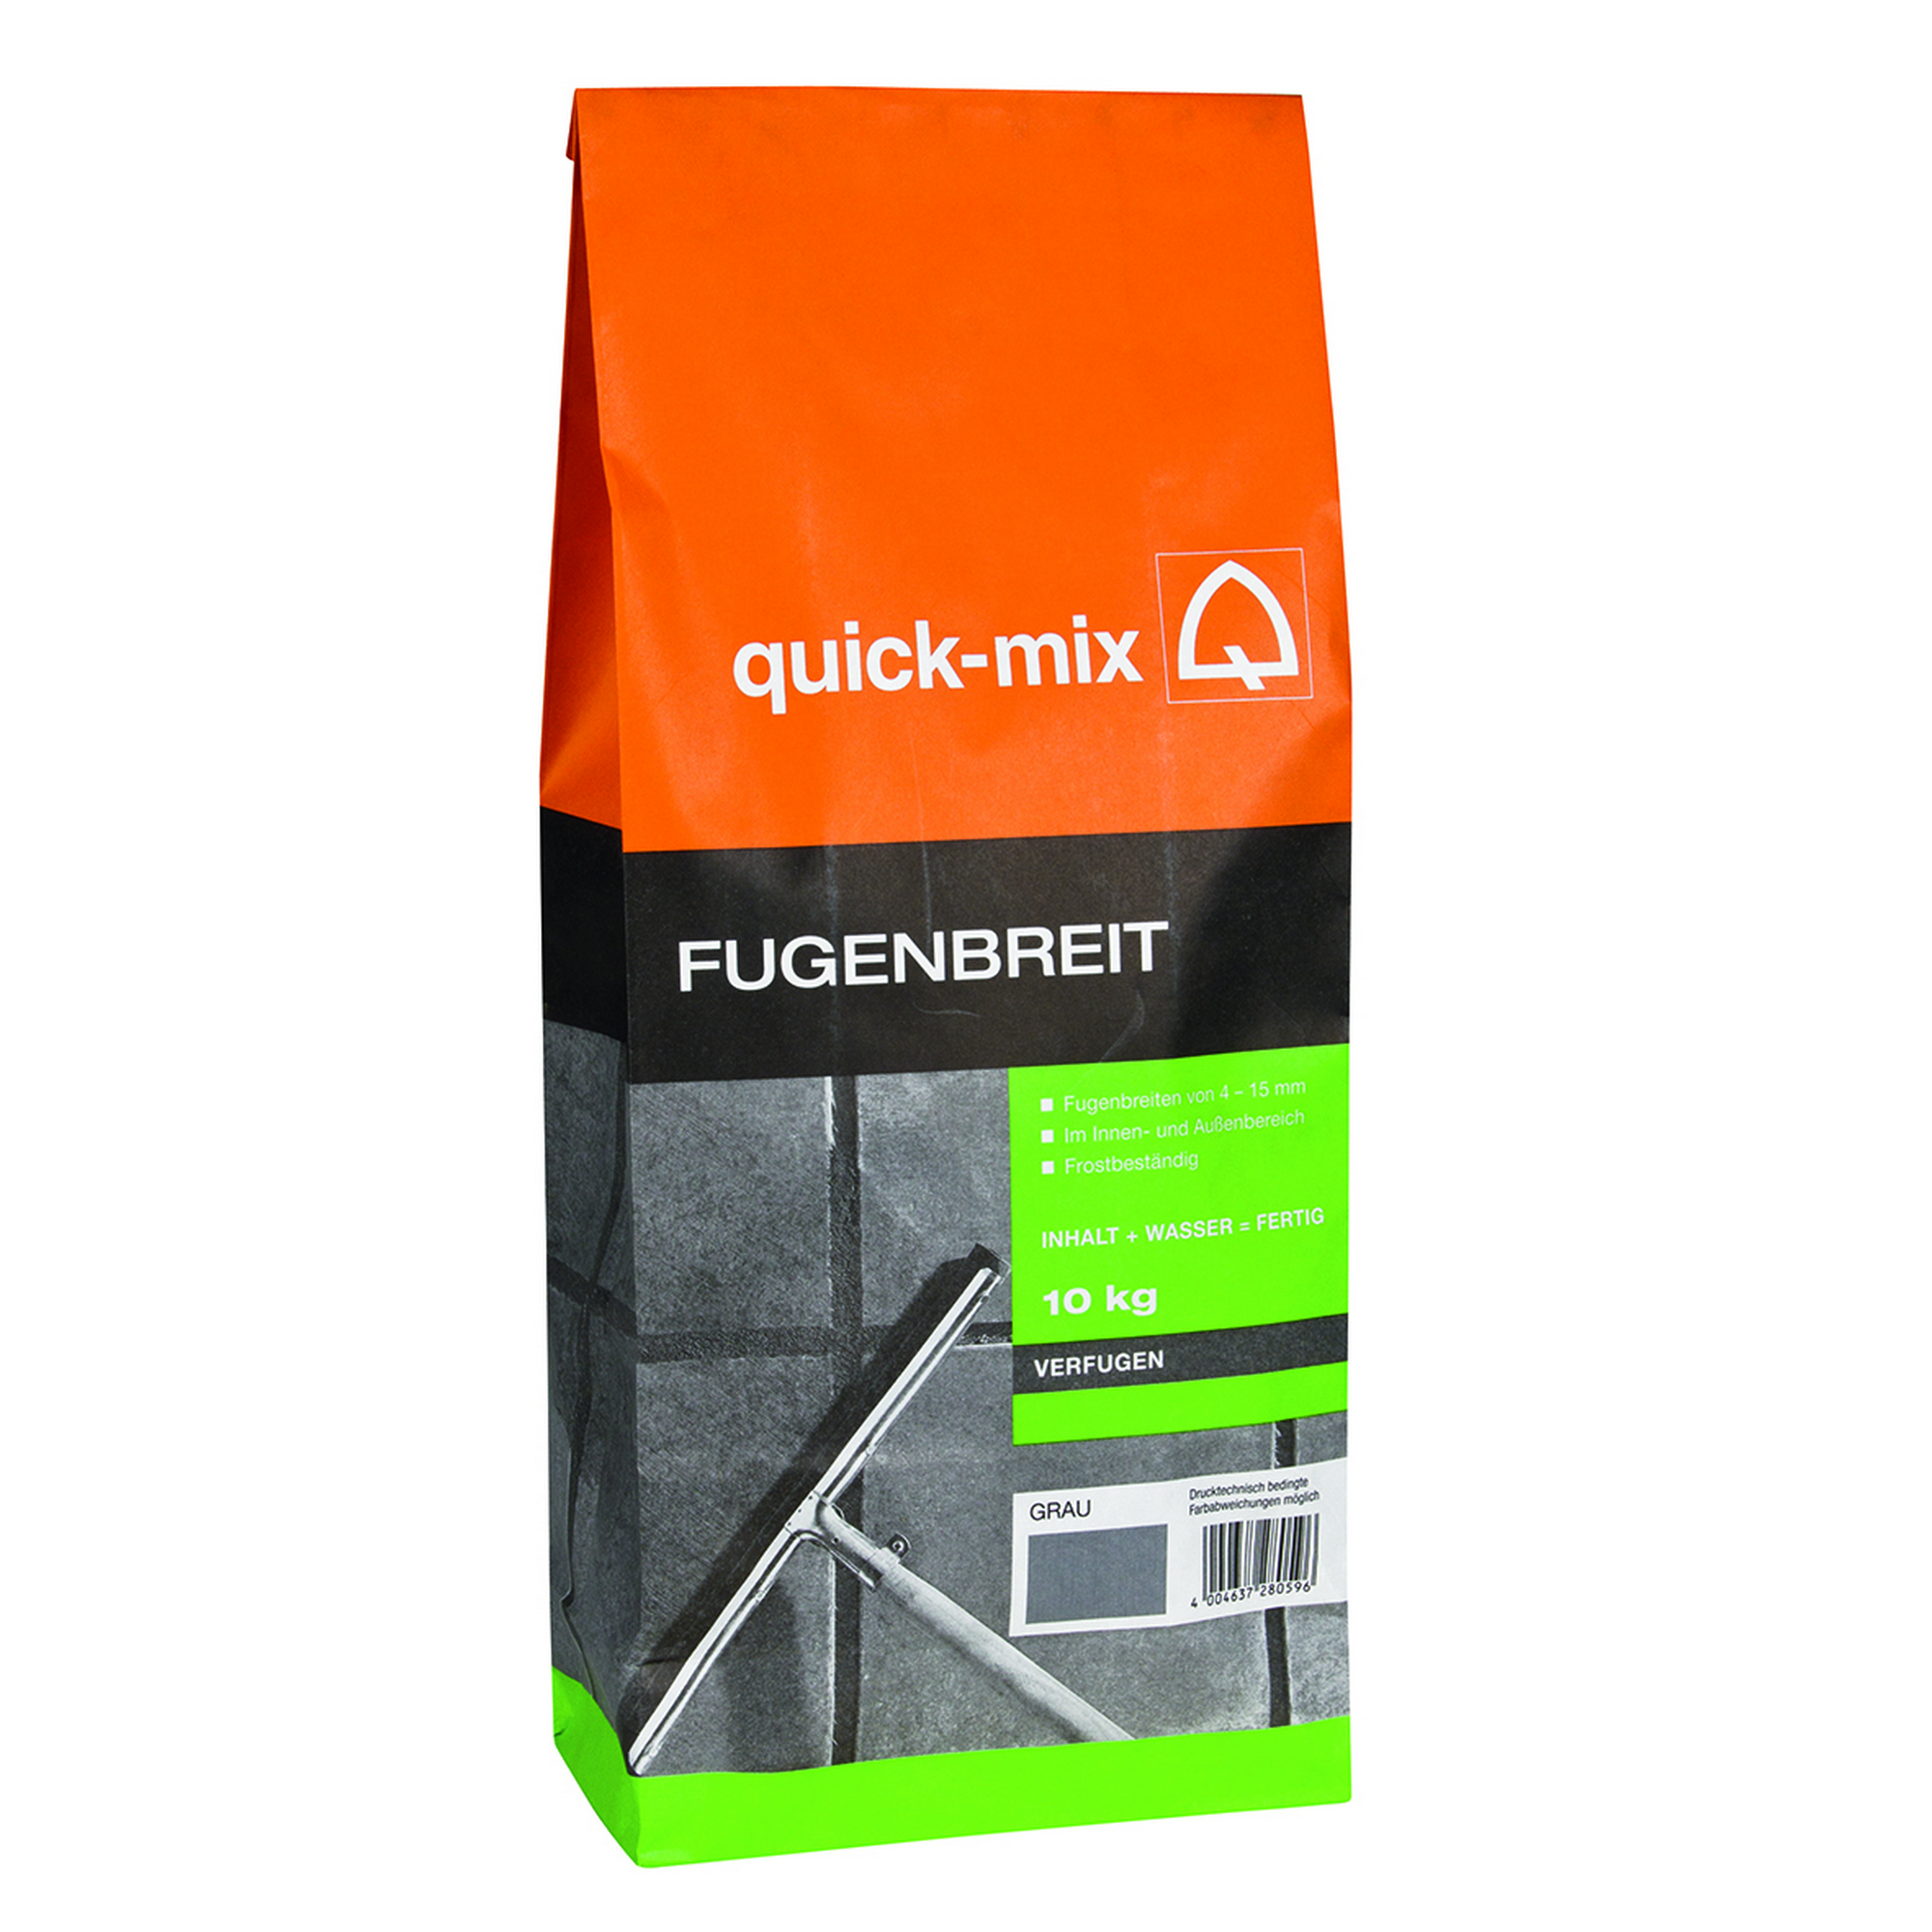 FUBR Fugenbreit 10 kg + product picture